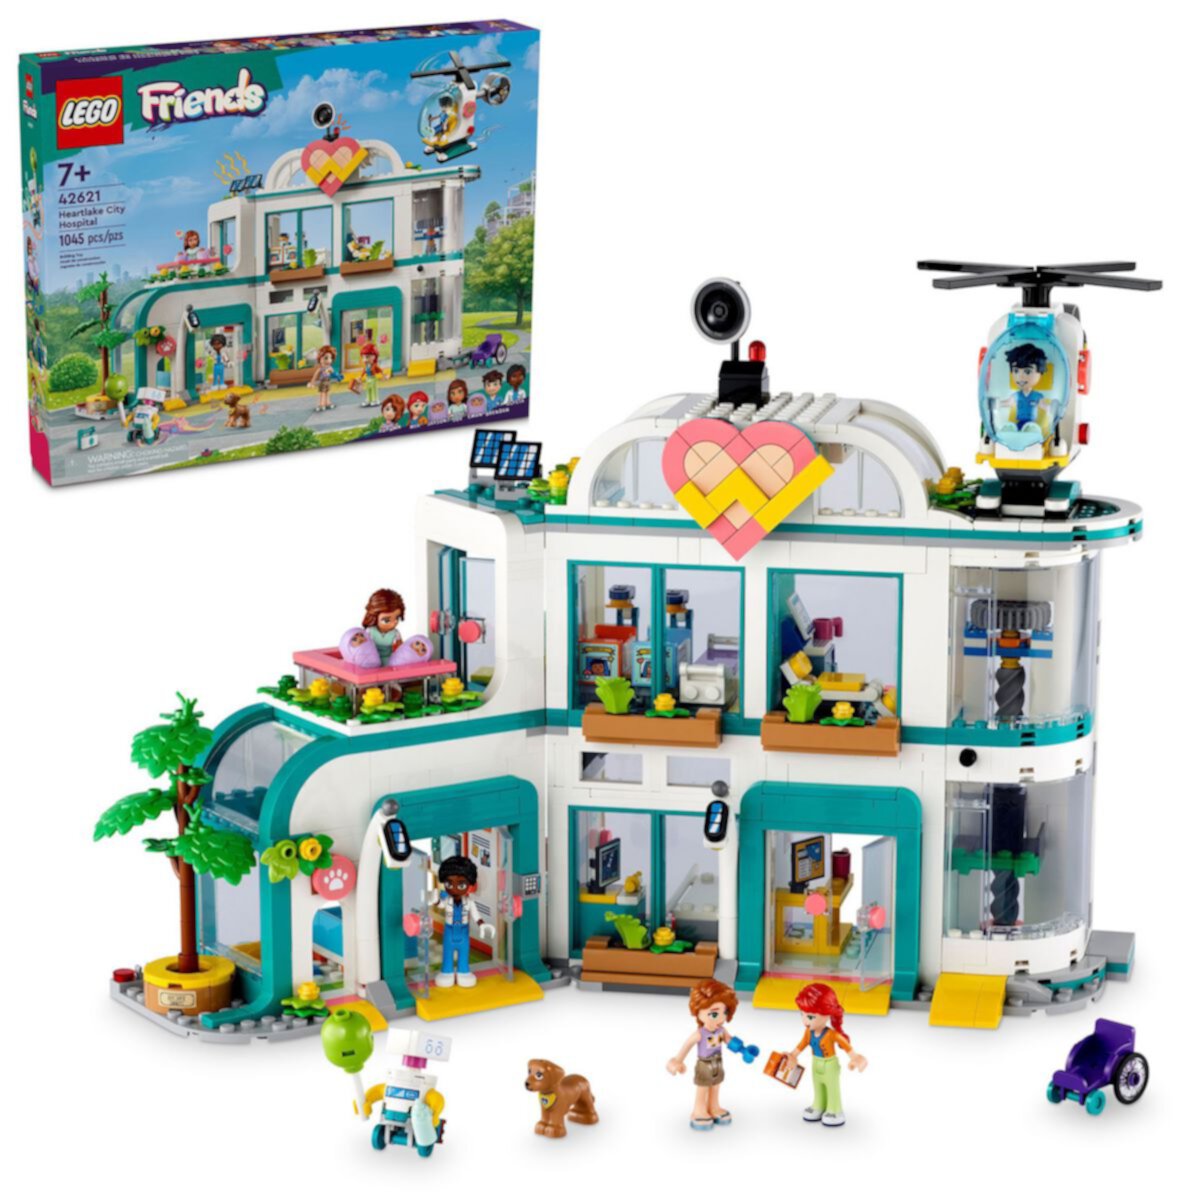 Набор игрушек для ролевых игр LEGO Friends Heartlake City Hospital 42621 Lego